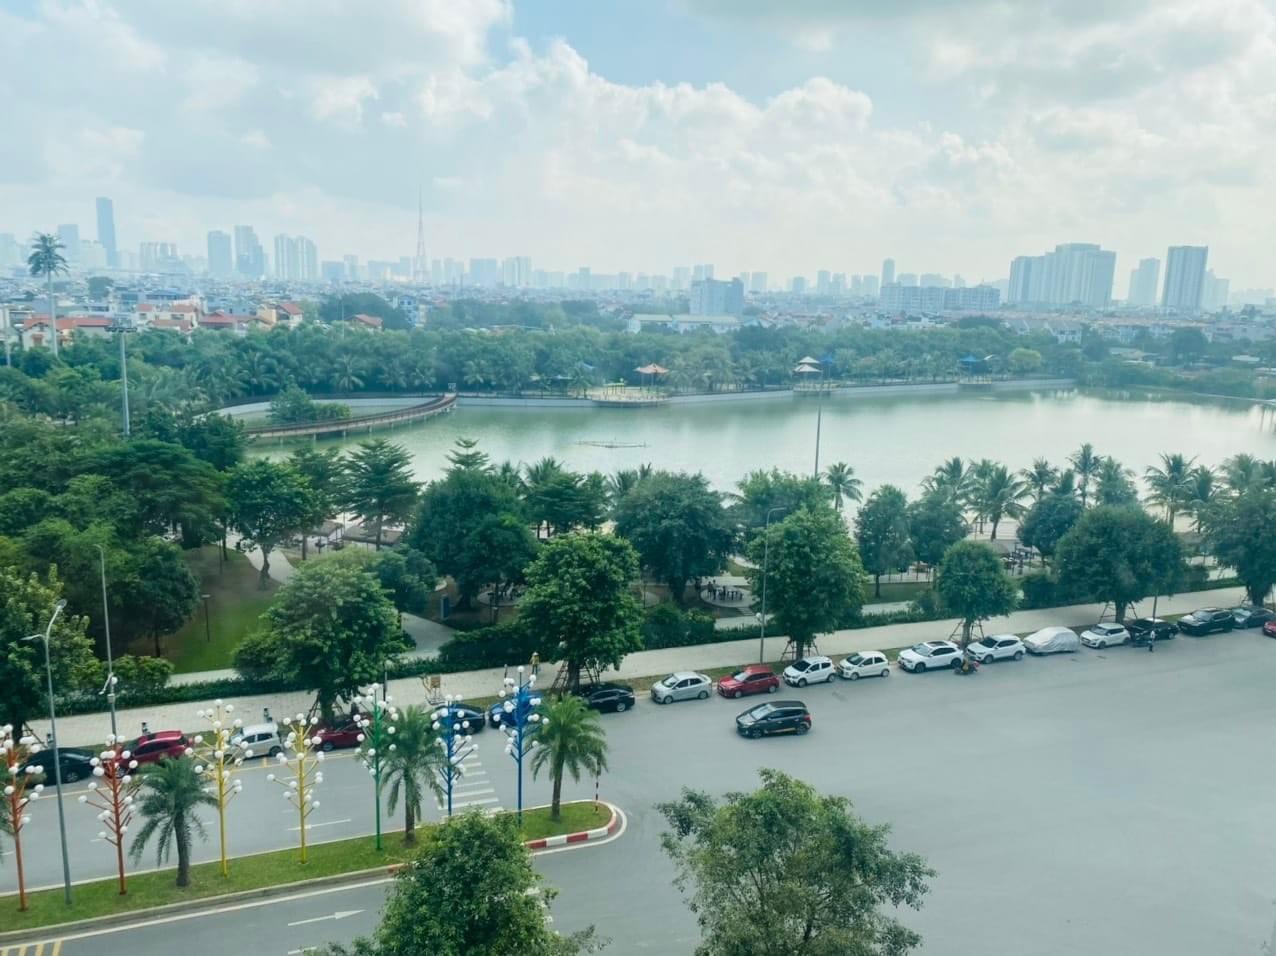 Giá căn hộ khu Tây Hà Nội lên cao gần 100 triệu/m2, liệu sẽ tăng tiếp?